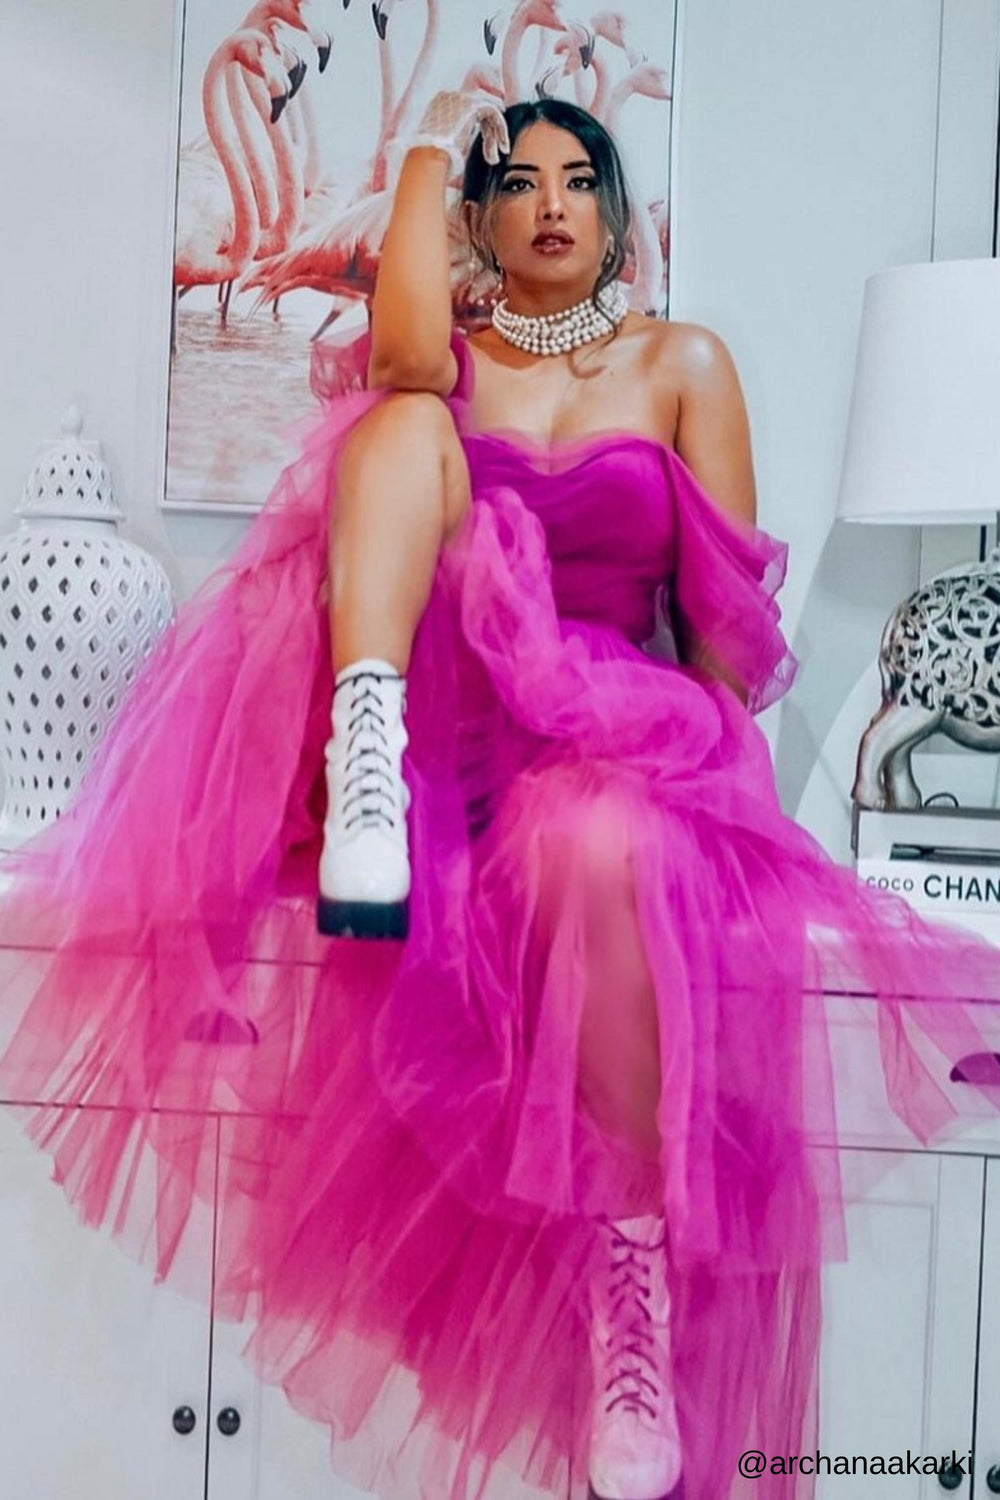 Sydney Maxi Tüllkleid - Vivid Pink Lace & Beads